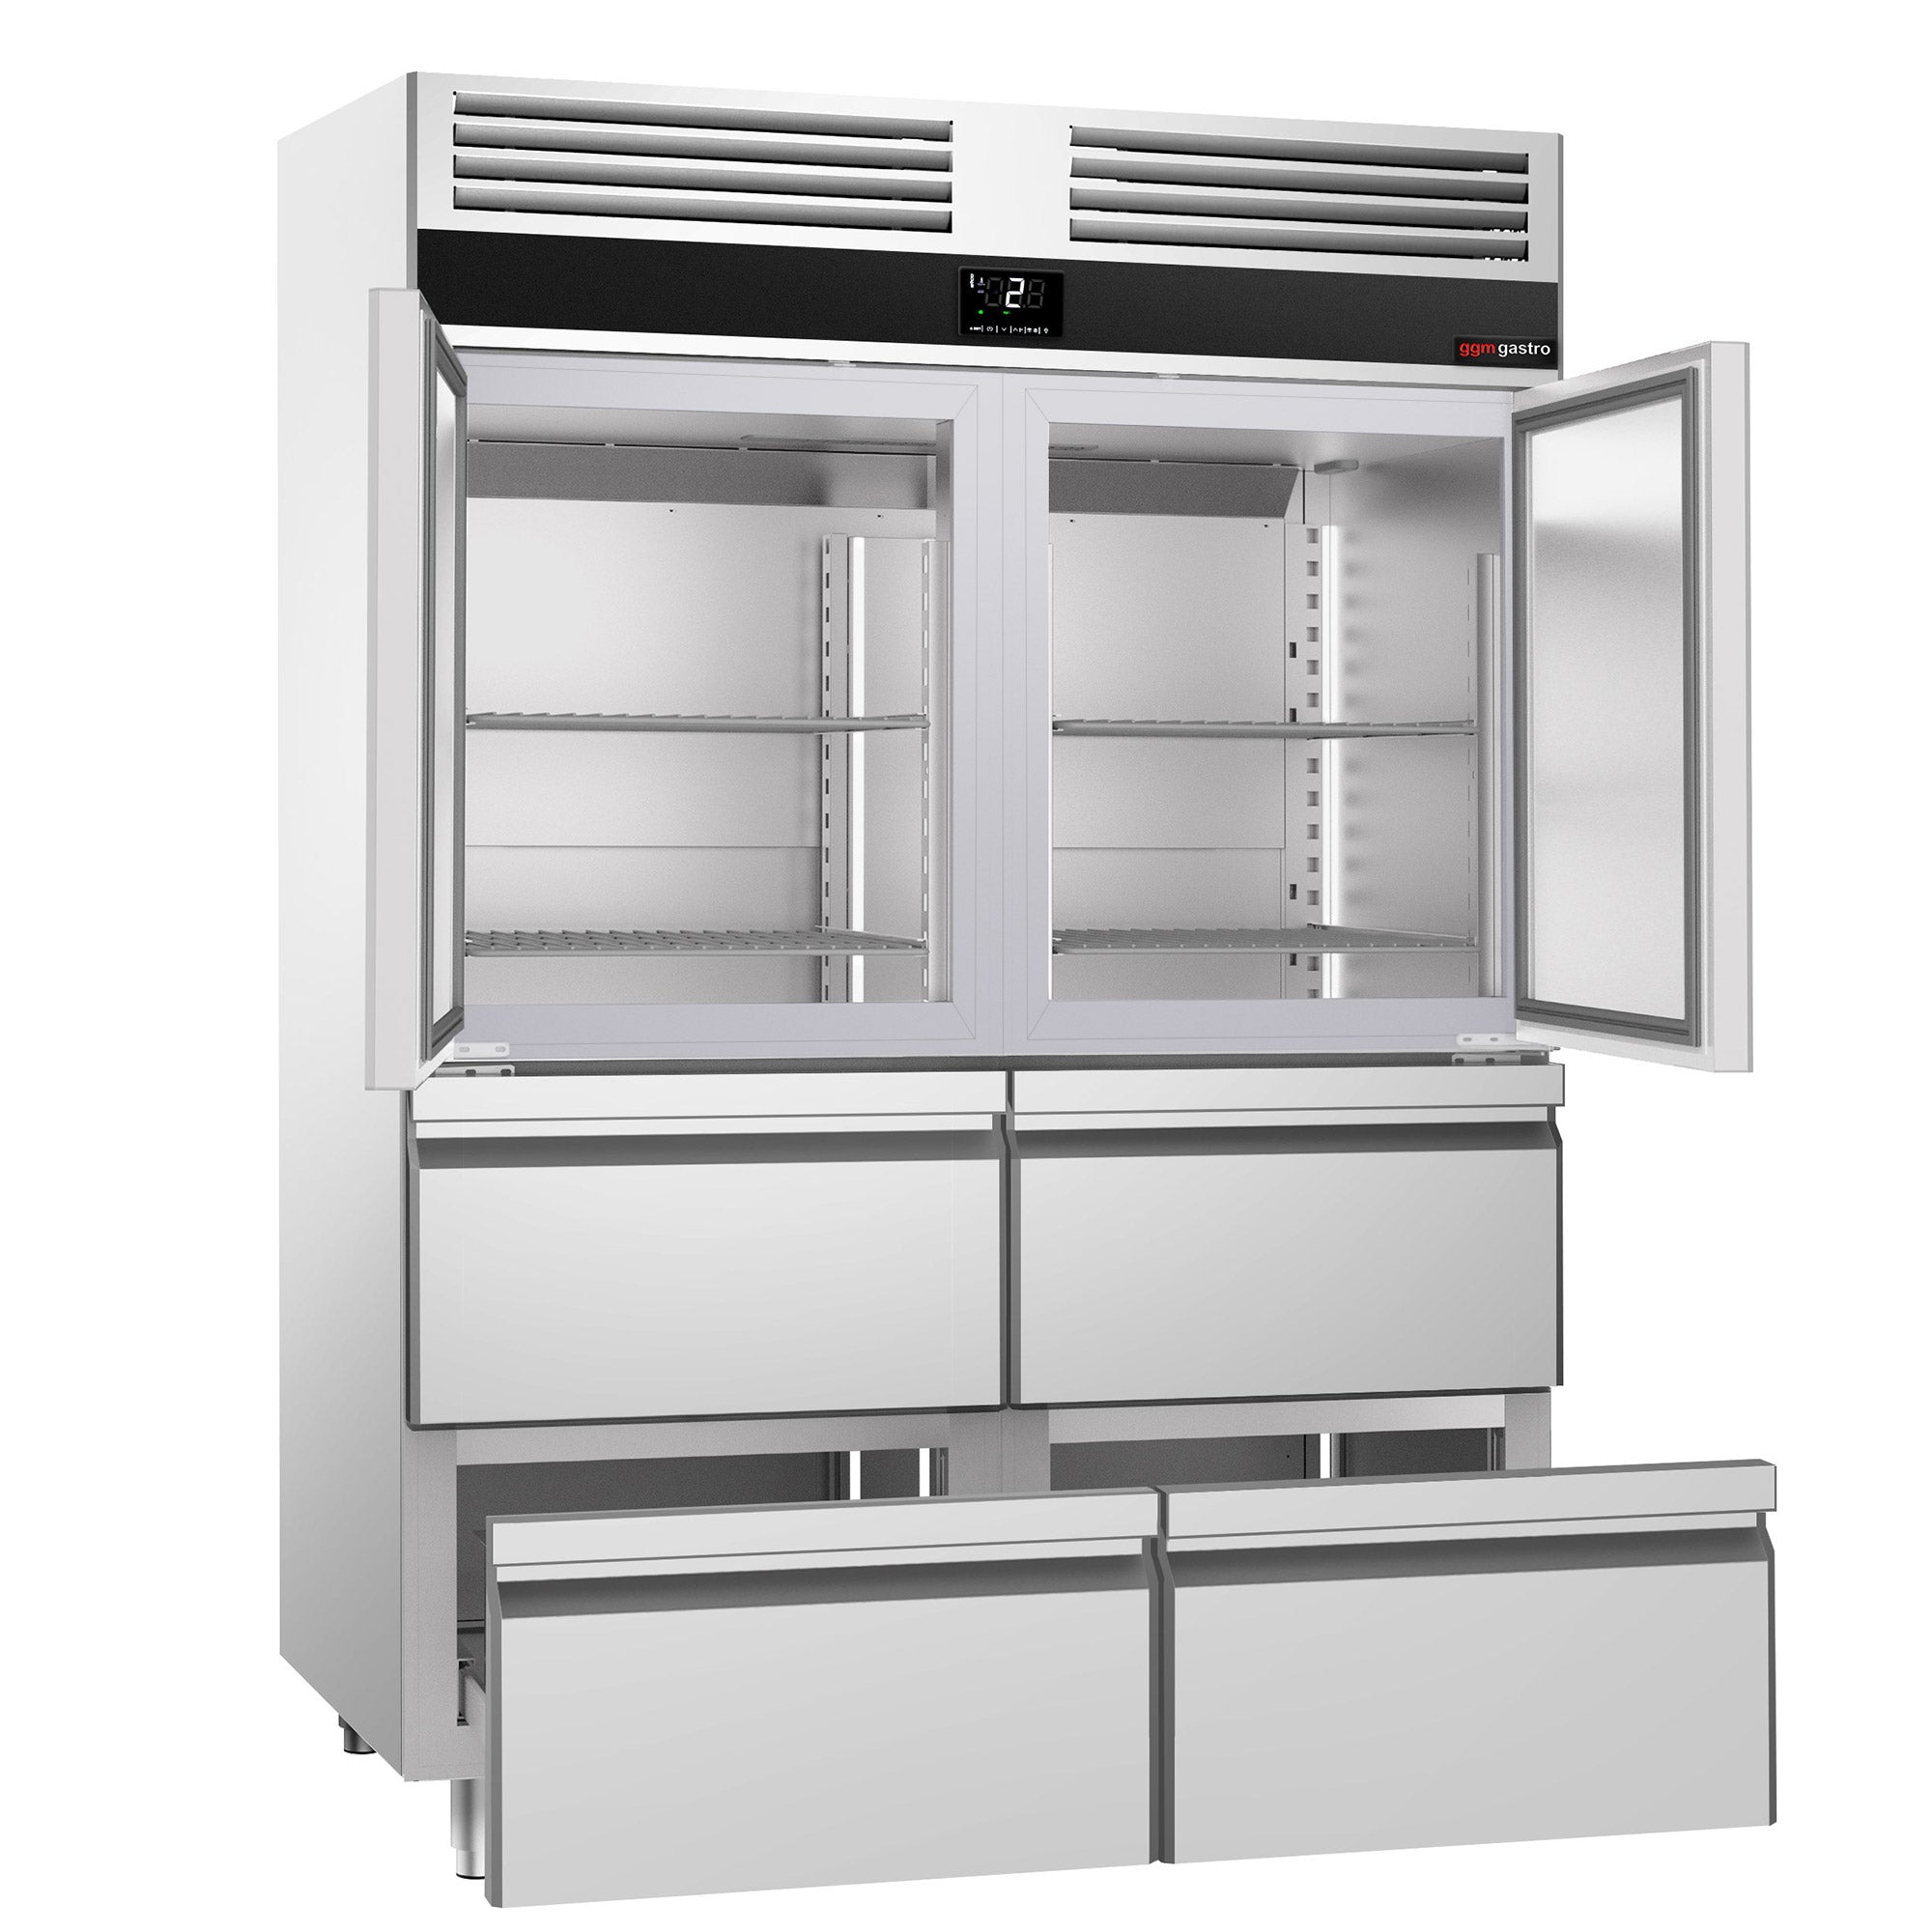 Kjøleskap - 1,4 x 0,81 m - med 2 halvdører i rustfritt stål og 4 skuffer 1/2